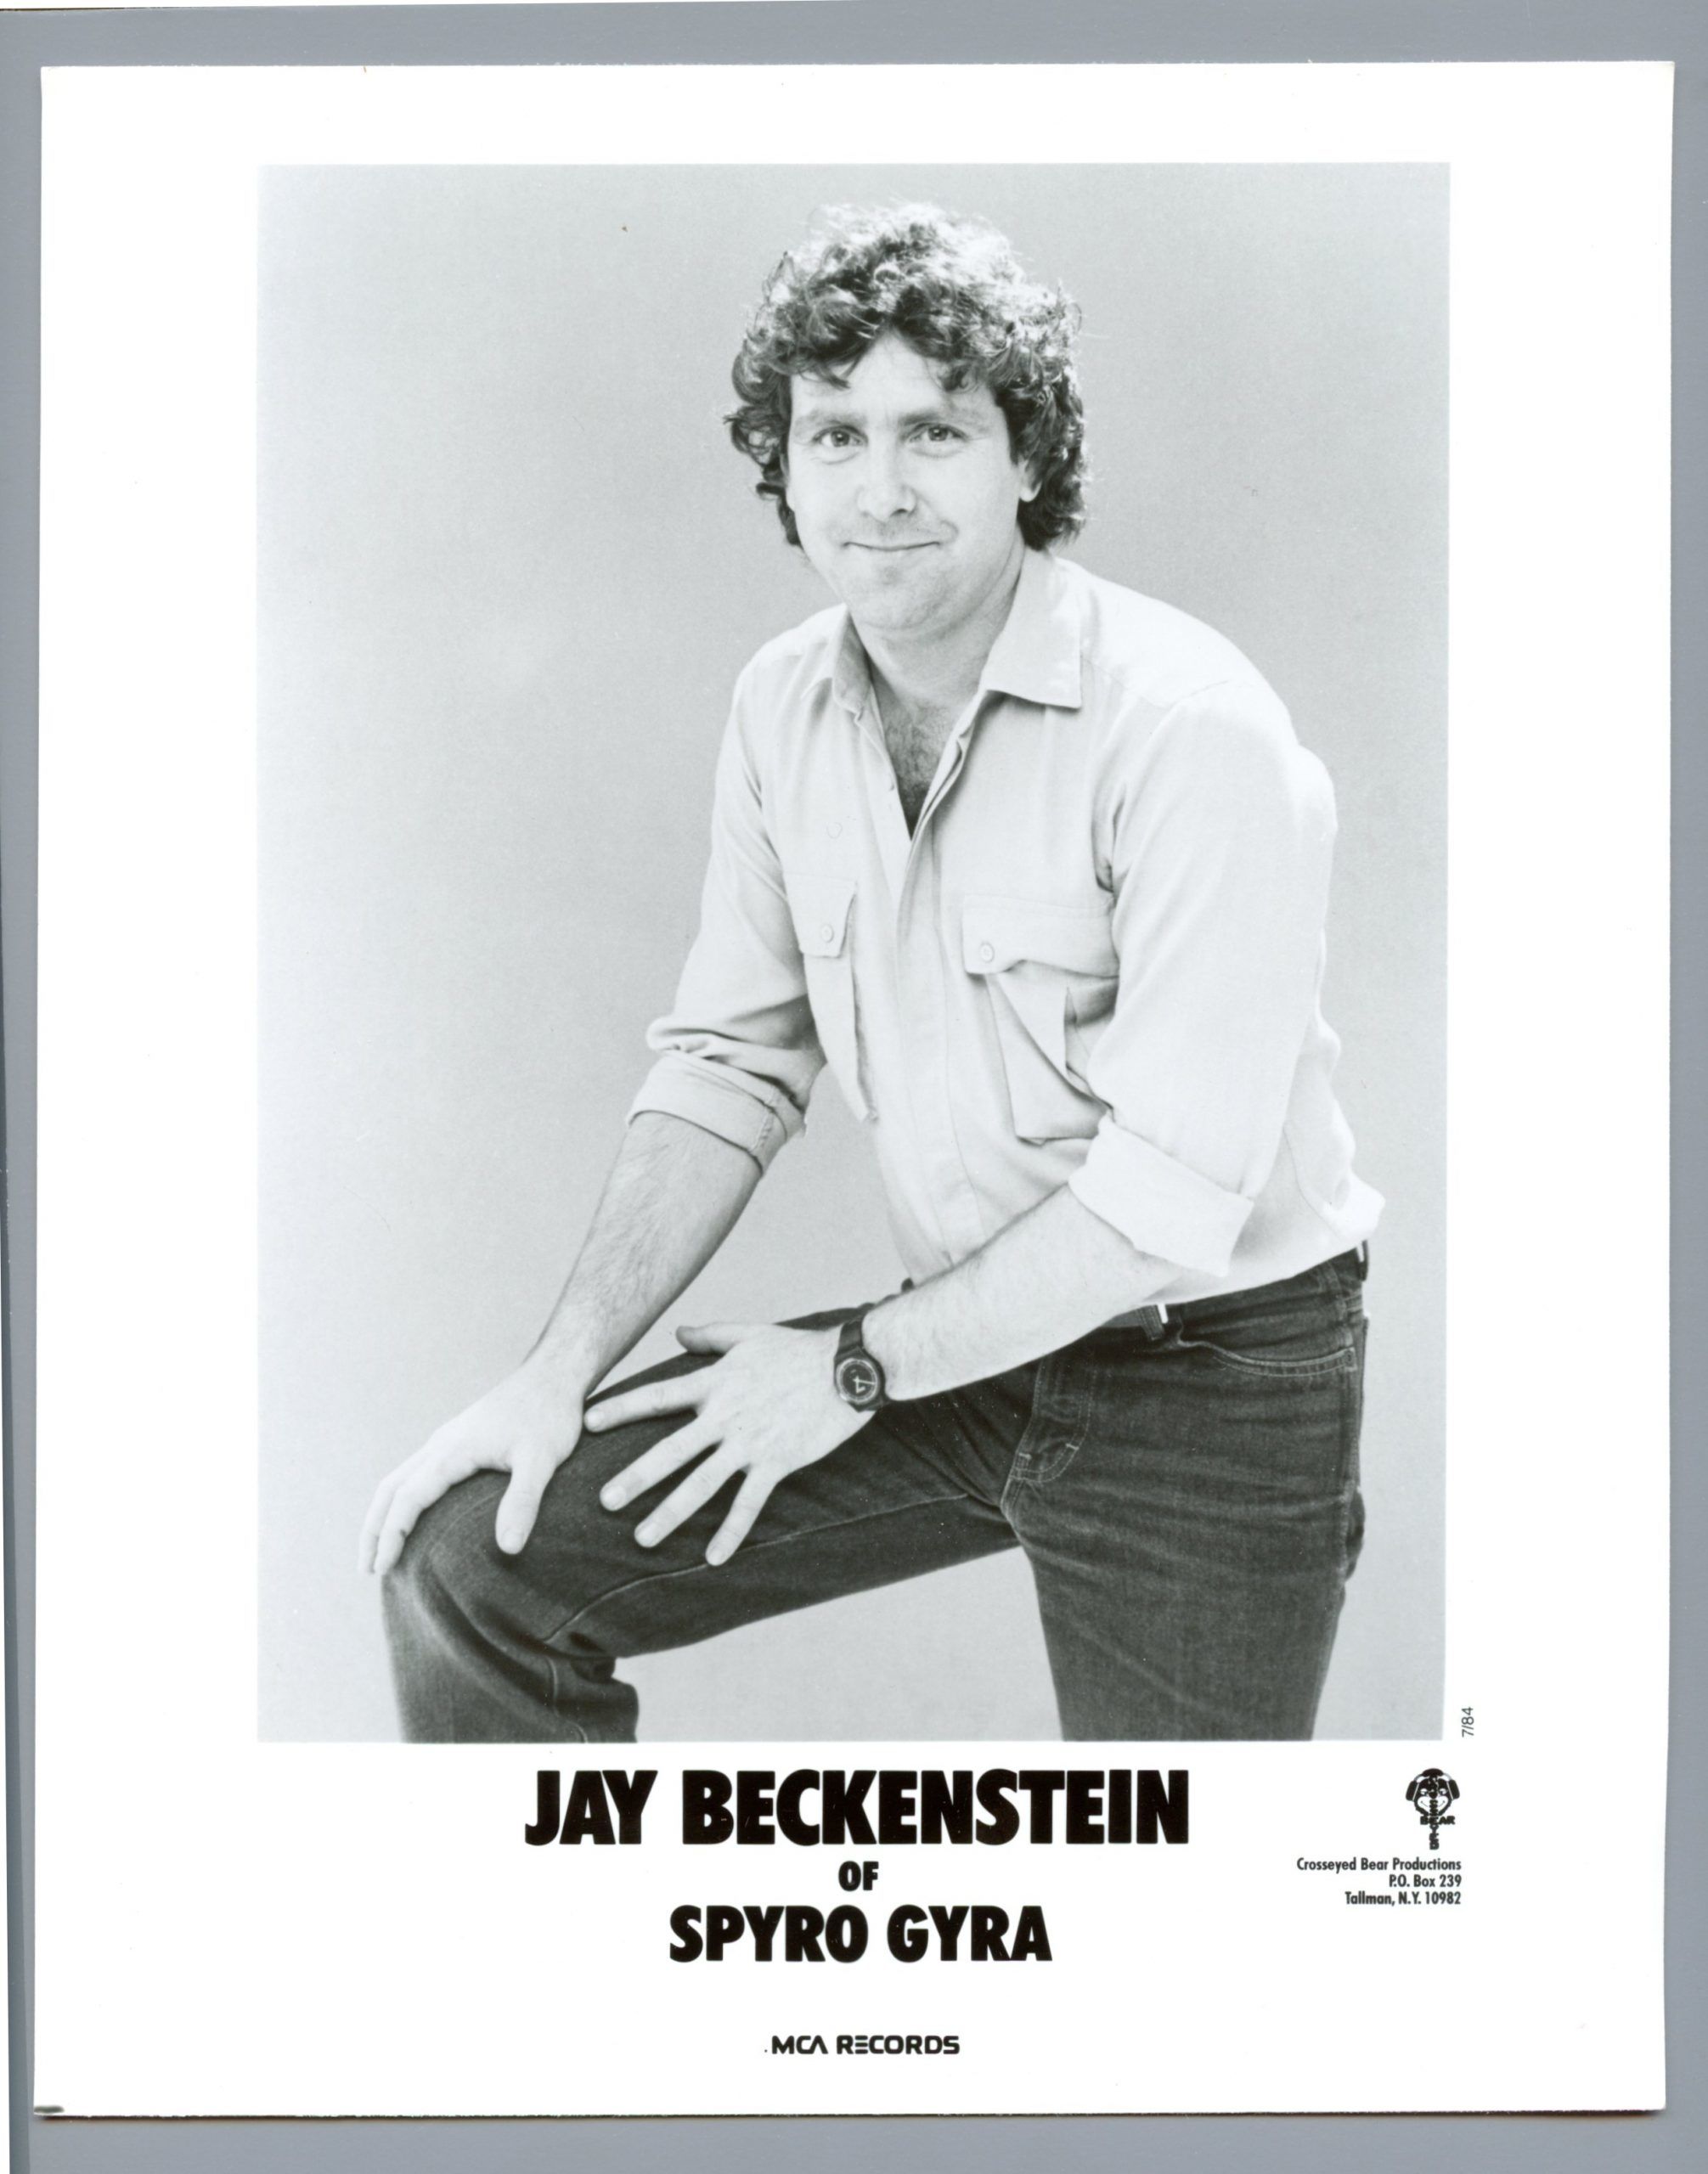 Jay Beckenstein Spyro Gyra Photo 1980s MCA Records